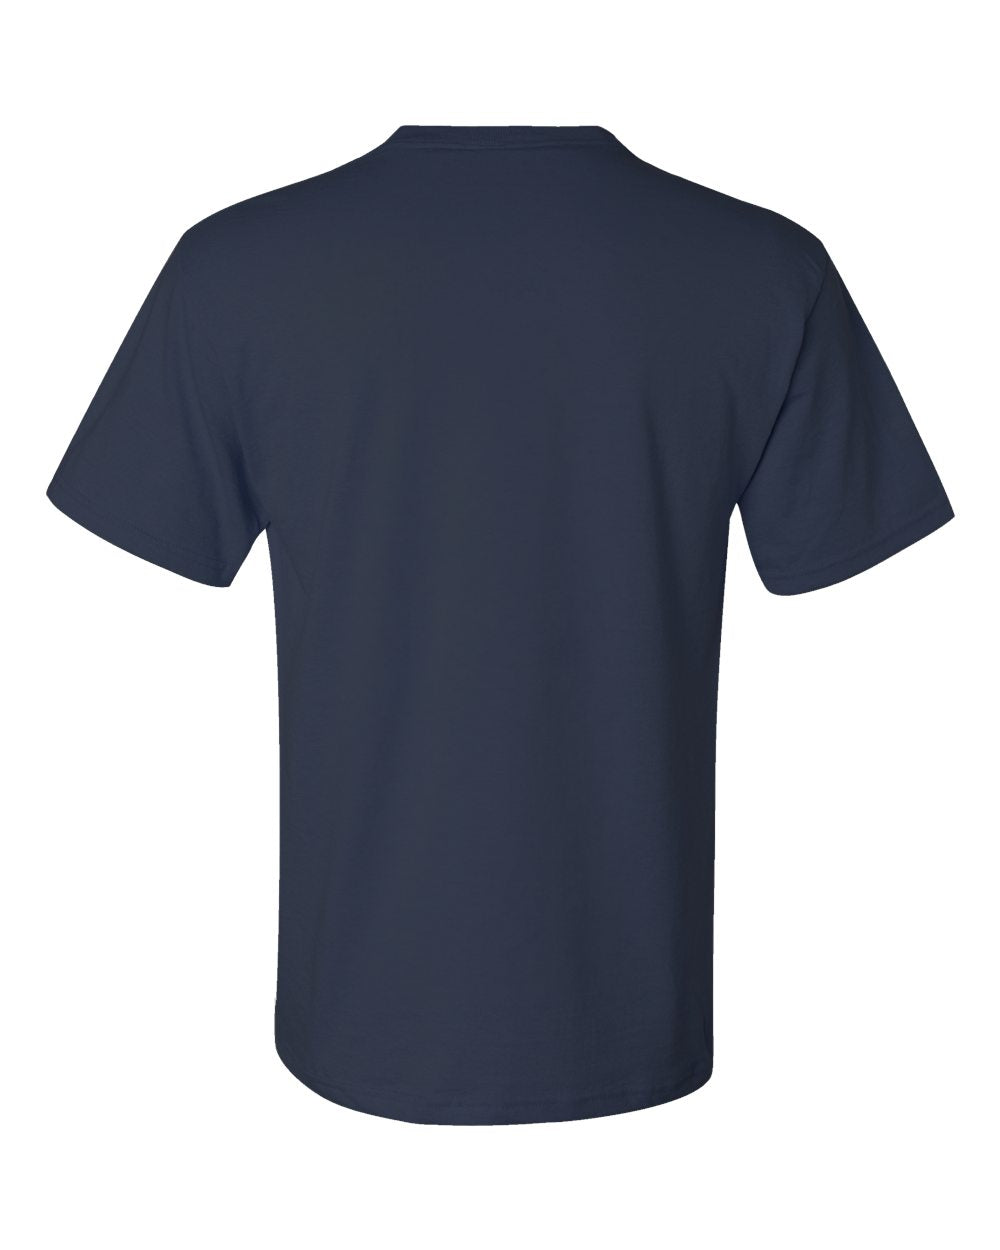 JERZEES - Dri-Power® 50/50 Pocket T-Shirt - 29MPR SKU#JDP5050PTS29MPR